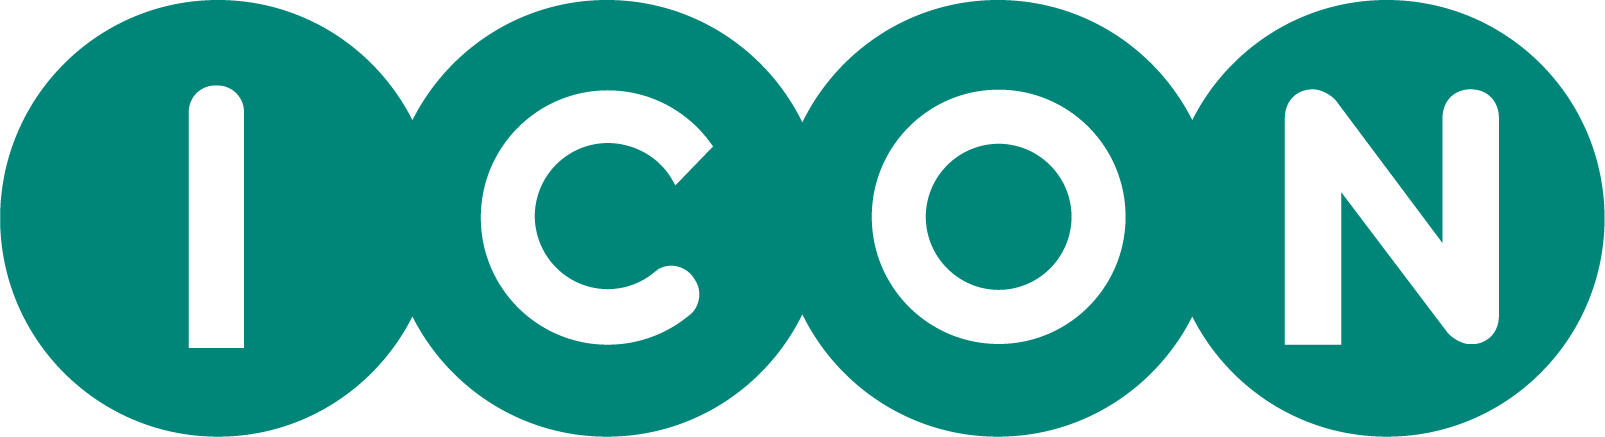 ICON plc Logo png